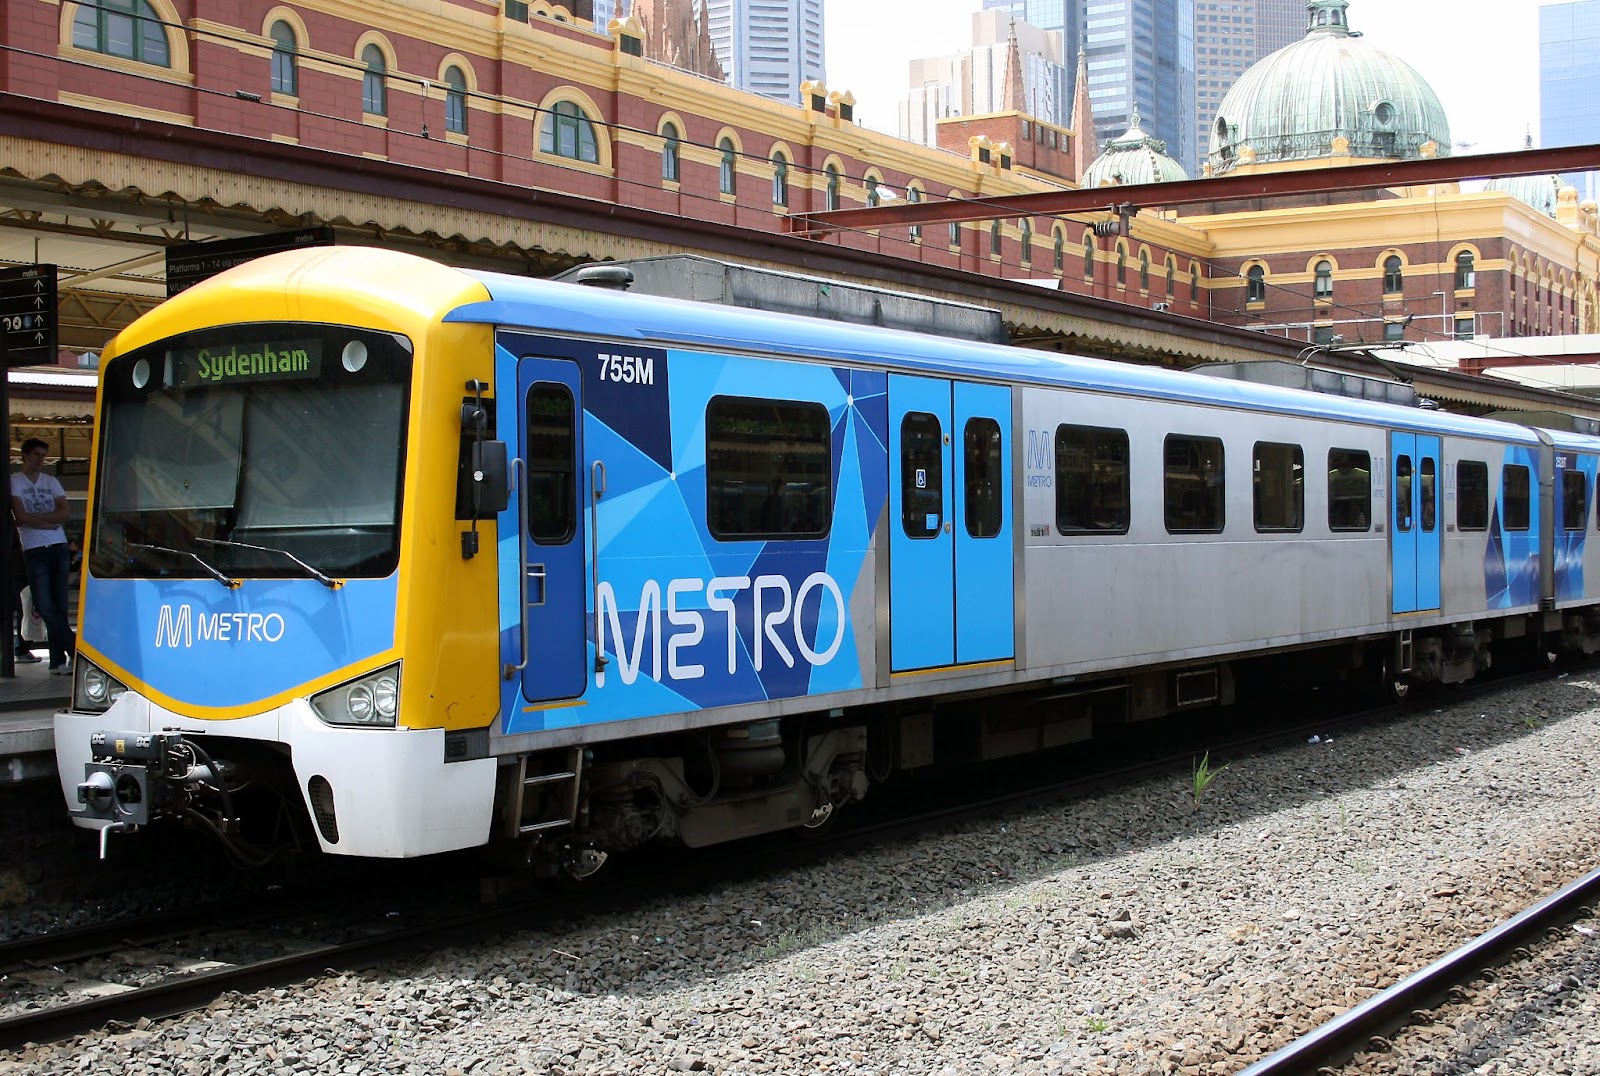 Hệ thống phương tiện công cộng tại thành phố Sydney nhiều tiện ích